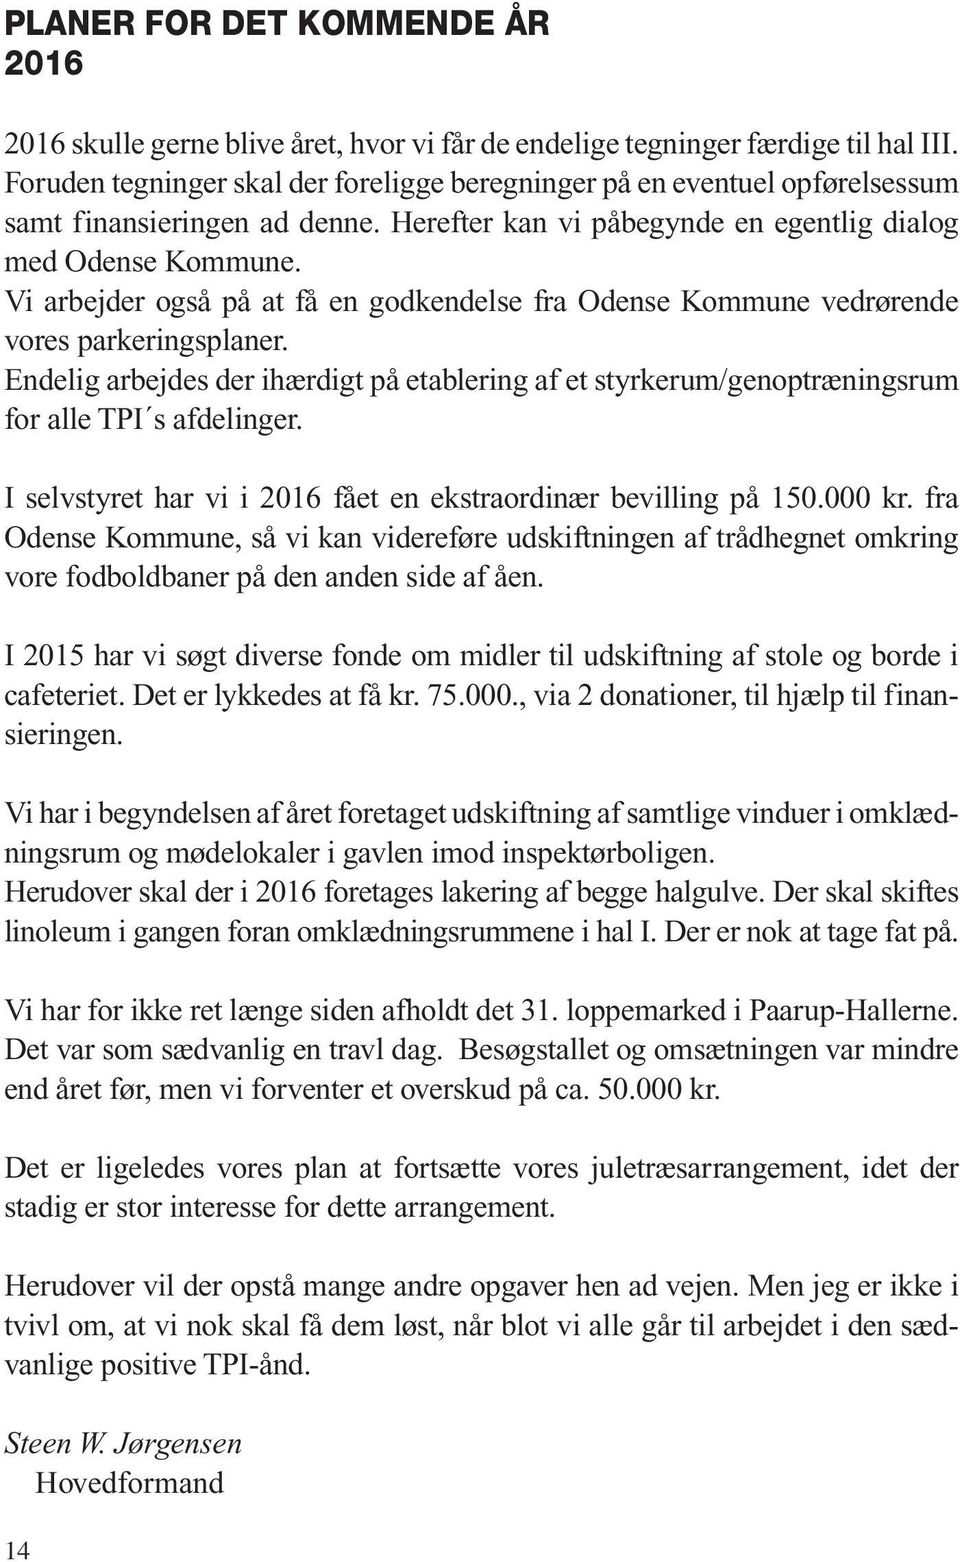 Vi arbejder også på at få en godkendelse fra Odense Kommune vedrørende vores parkeringsplaner. Endelig arbejdes der ihærdigt på etablering af et styrkerum/genoptræningsrum for alle TPI s afdelinger.